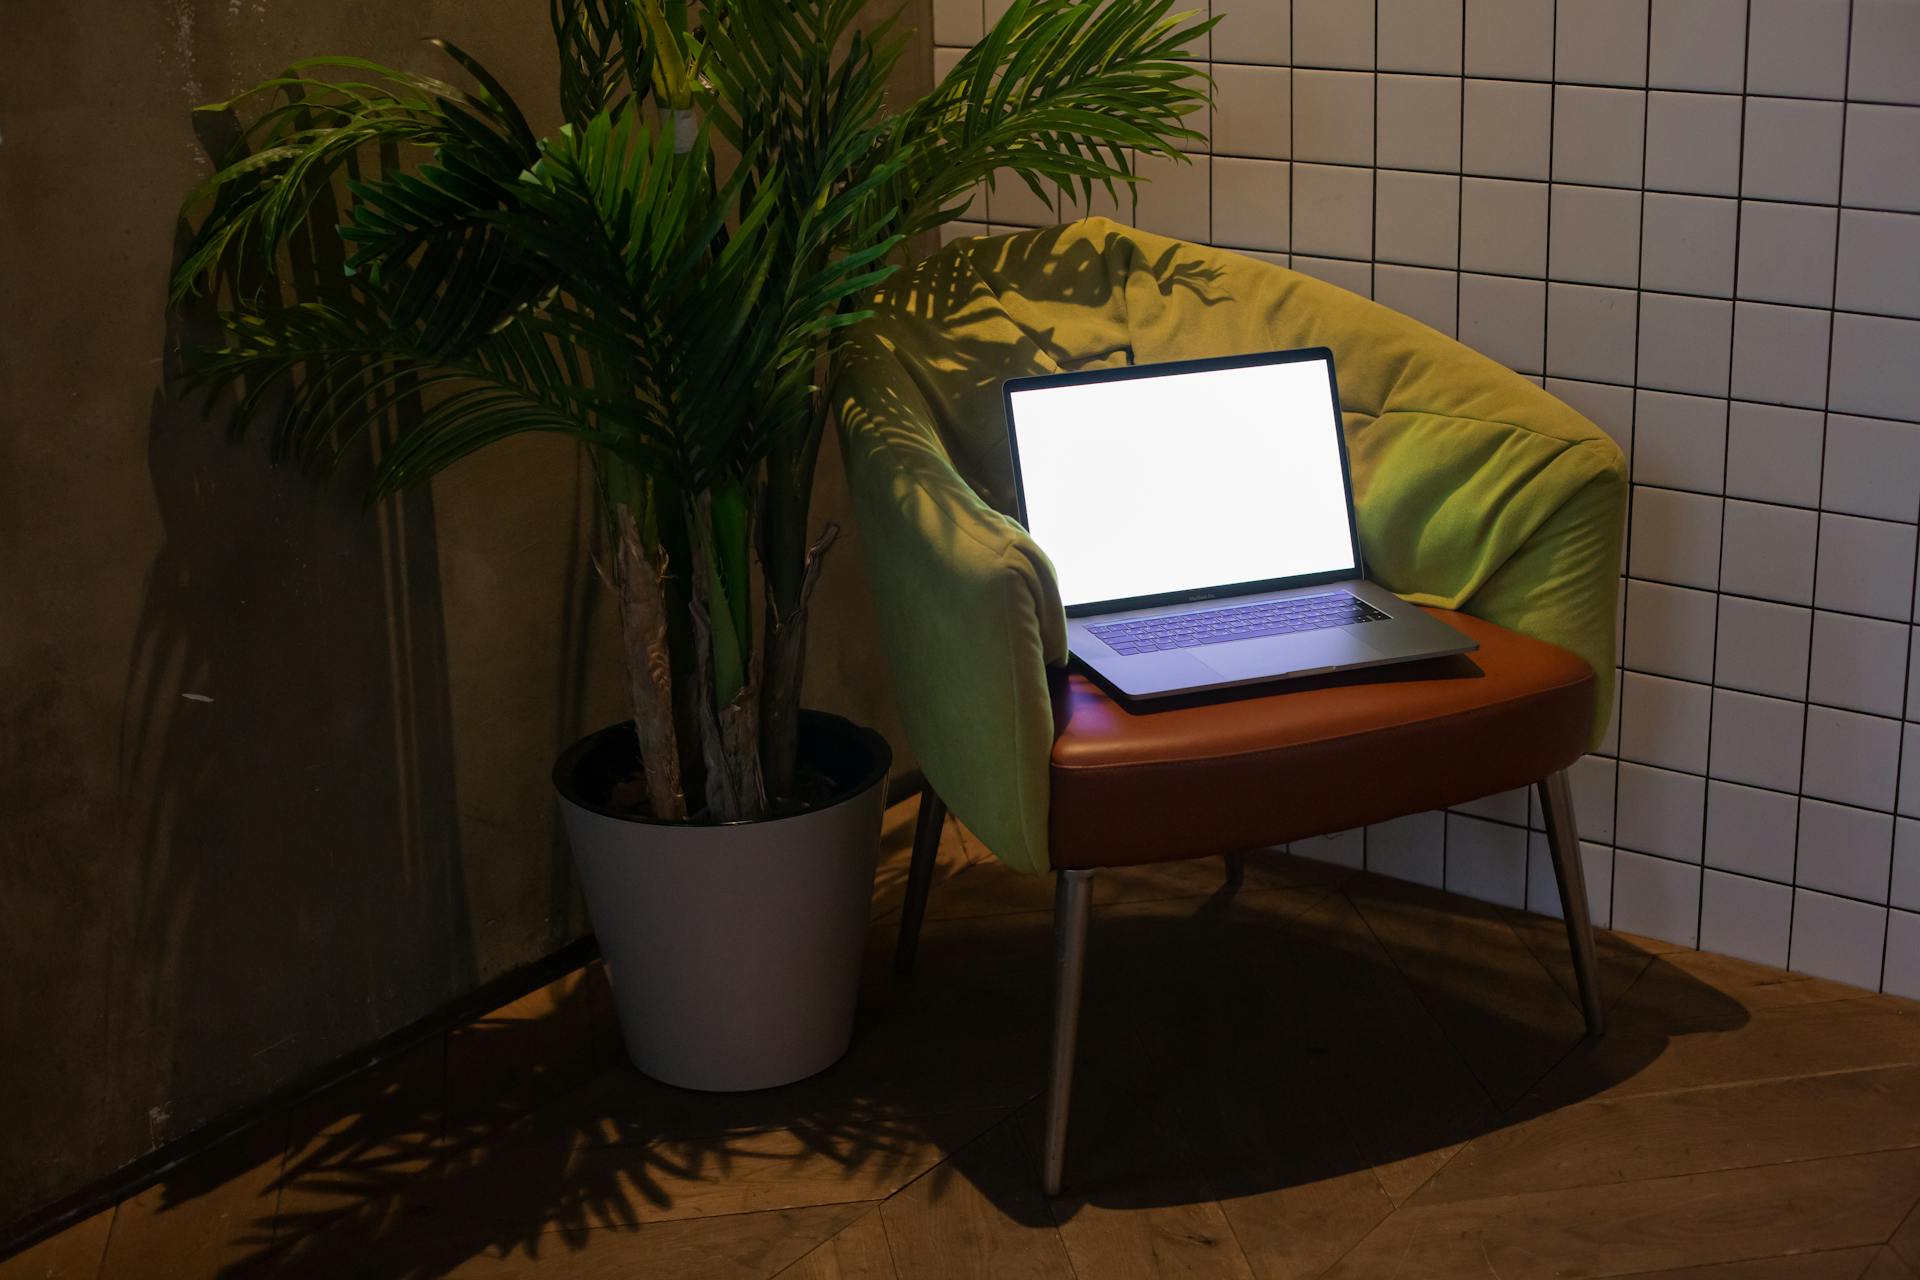 Un ordinateur portable ouvert sur une chaise | Source : Pexels